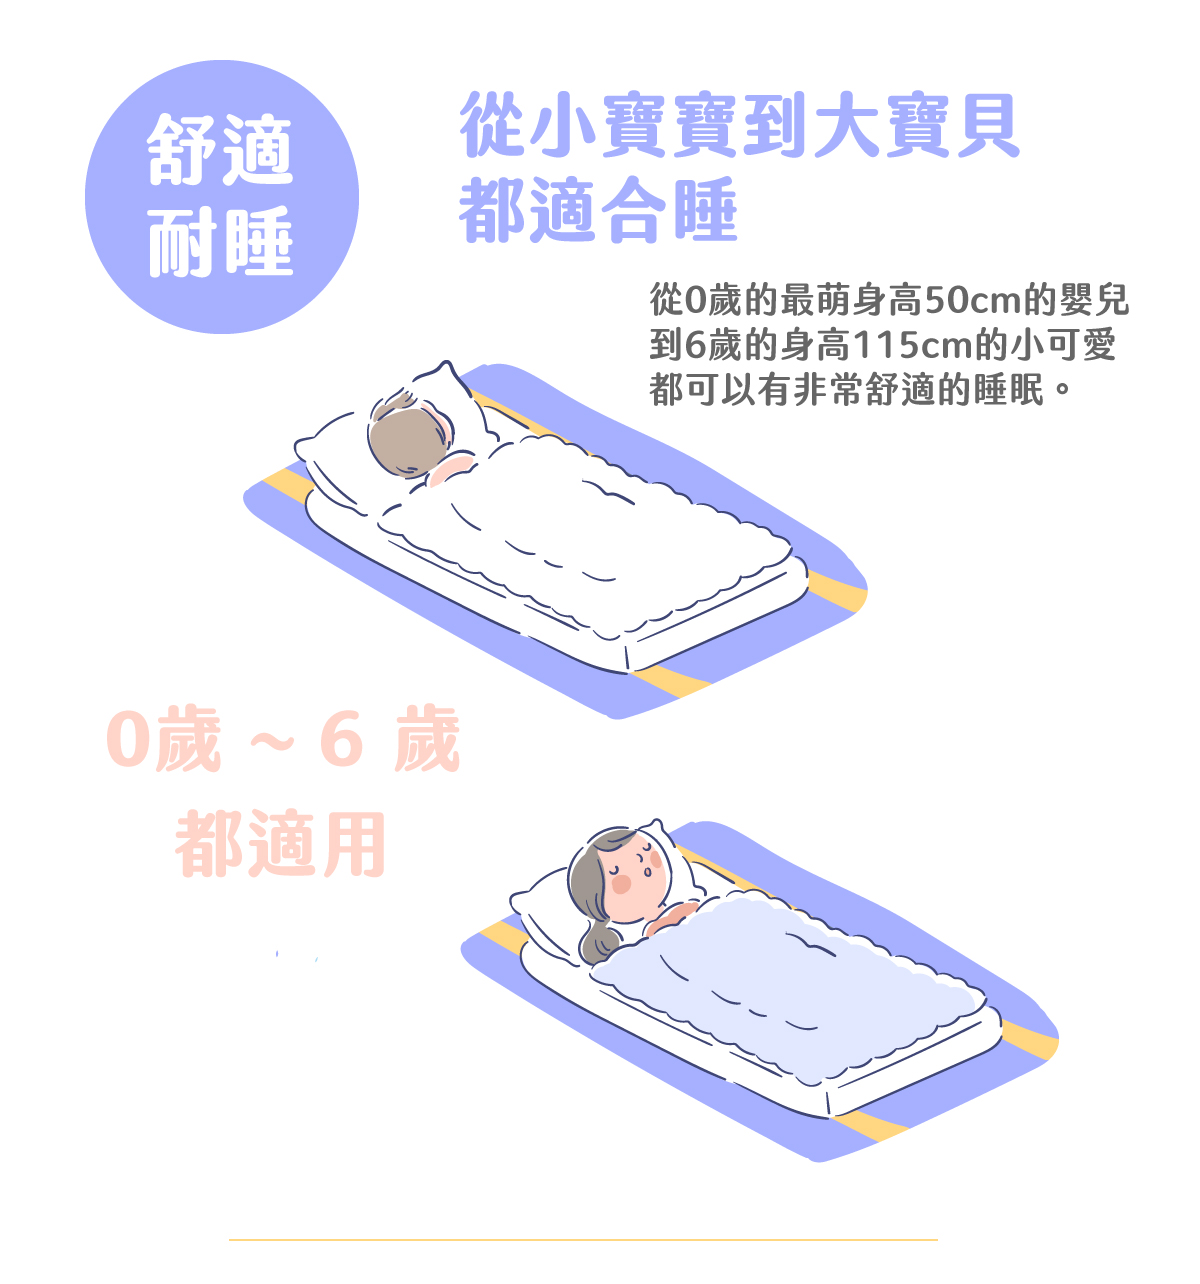 〔舒適耐睡〕從小寶寶到大寶貝都適合睡，從0歲的最萌身高50cm的嬰兒到6歲的身高115cm的小可愛都可以有非常舒適的睡眠。